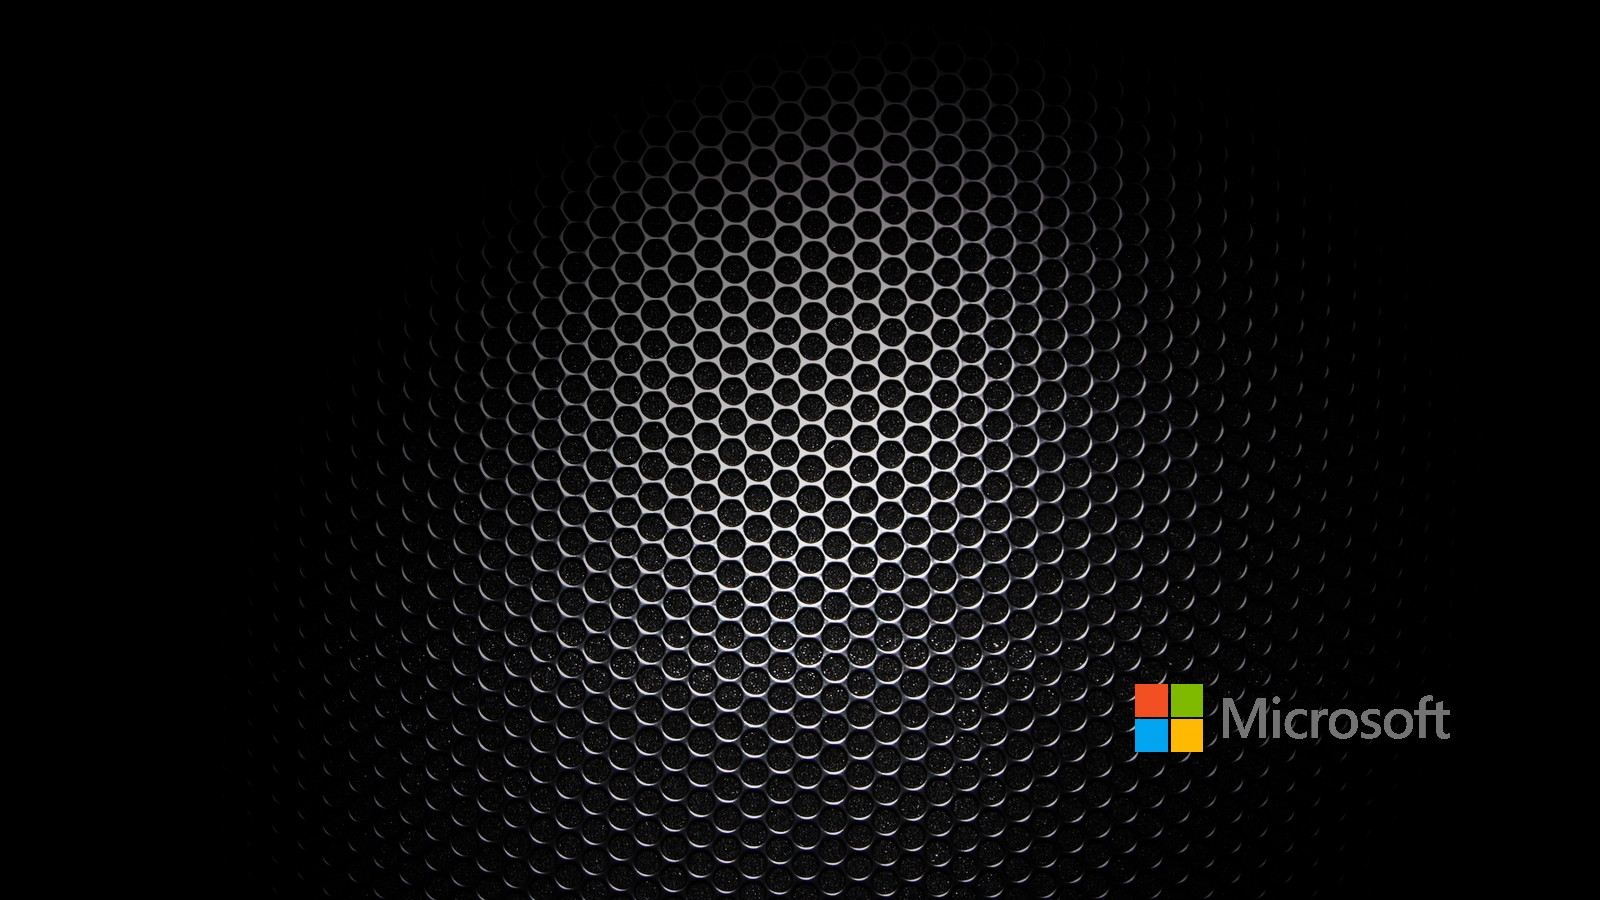 Microsoft wallpaper 1600x900 57078